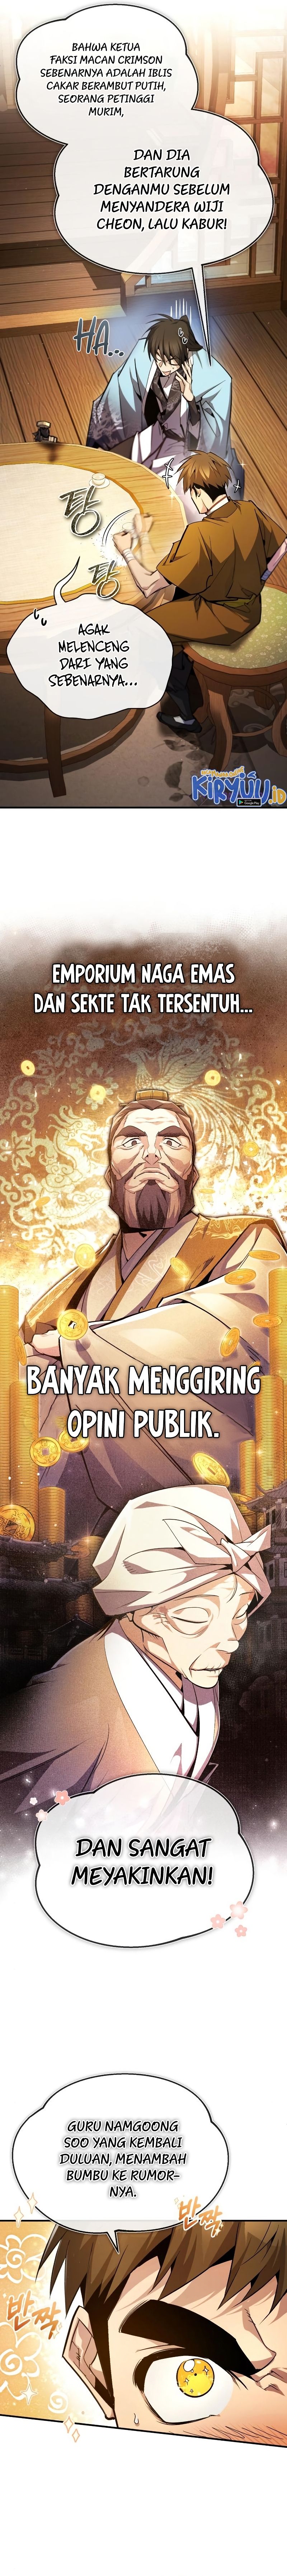 Number One Star Instructor Master Baek (One Hit Teacher, Master Baek) Chapter 84 - 185